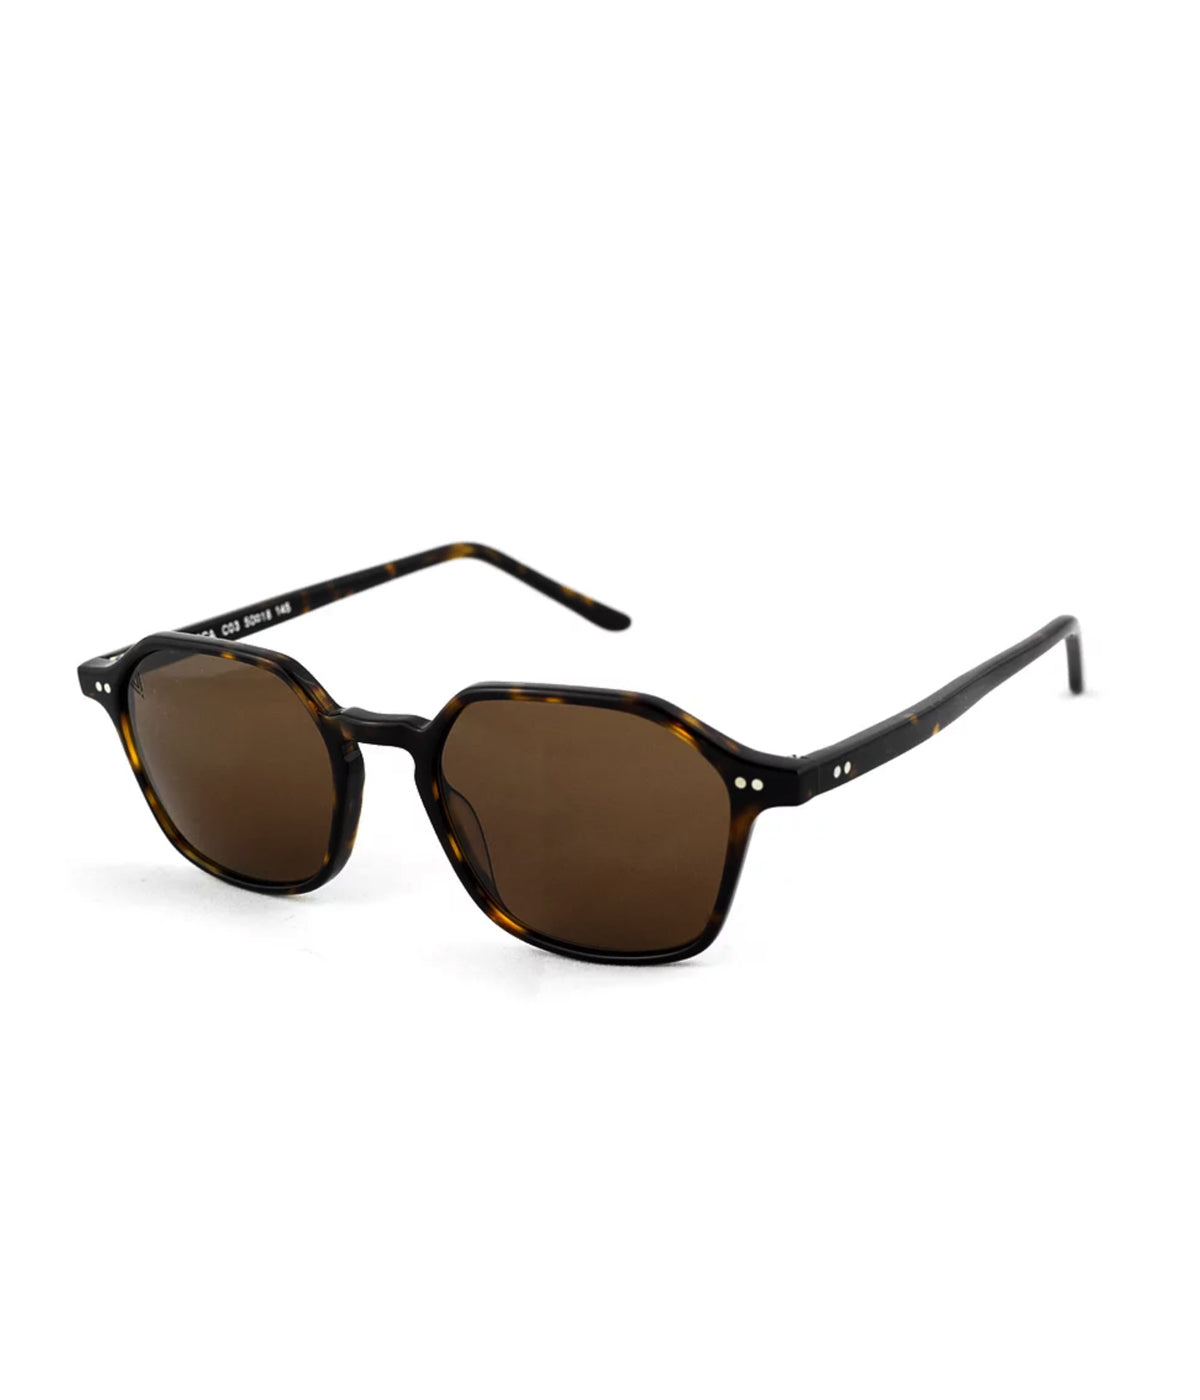 Velasca Sunglasses in Dark Avana & Brown